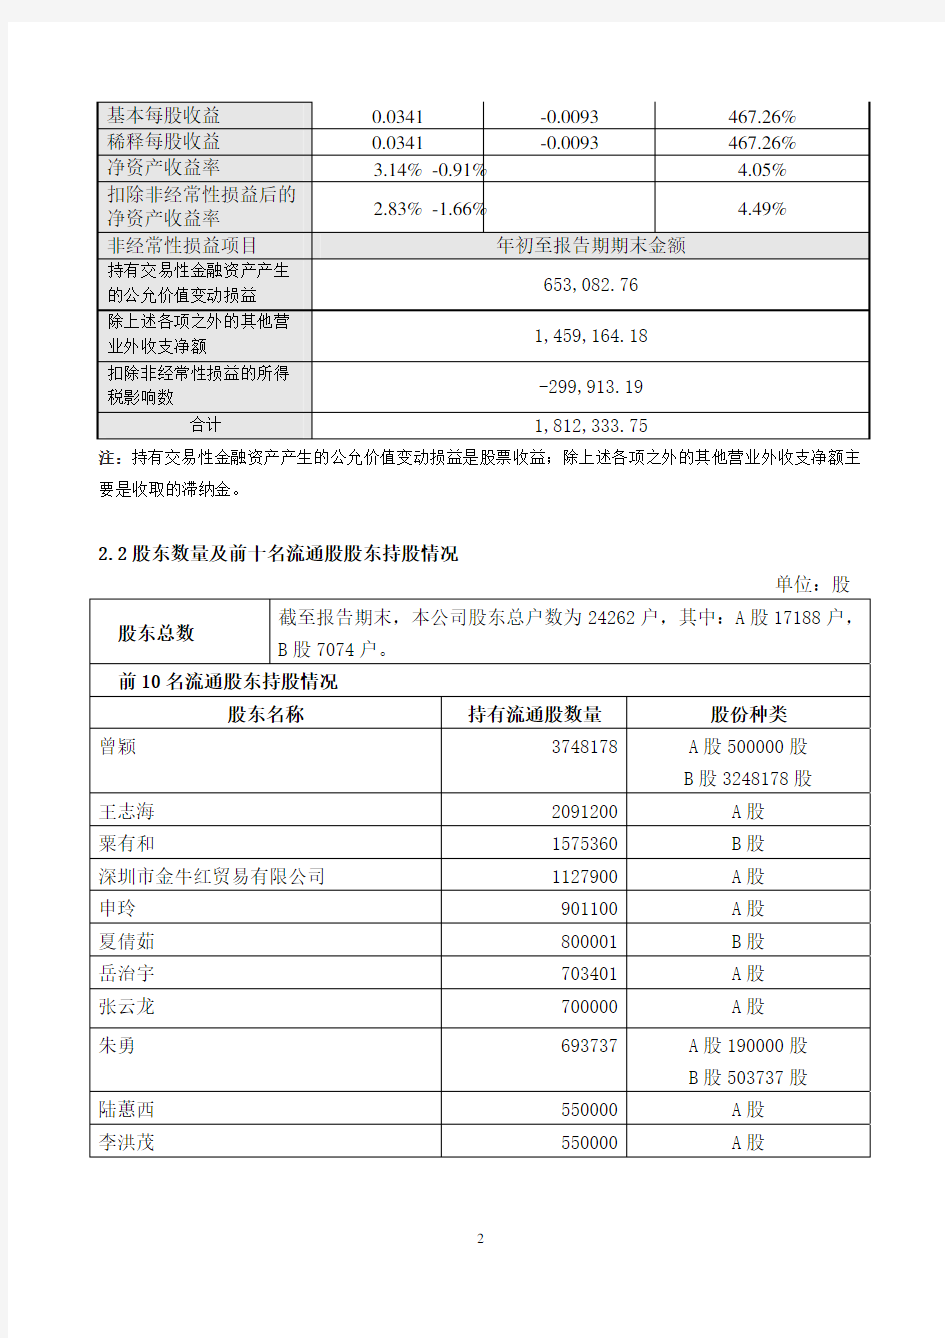 1深圳市物业发展(集团)股份有限公司2009年第一季度报告全文